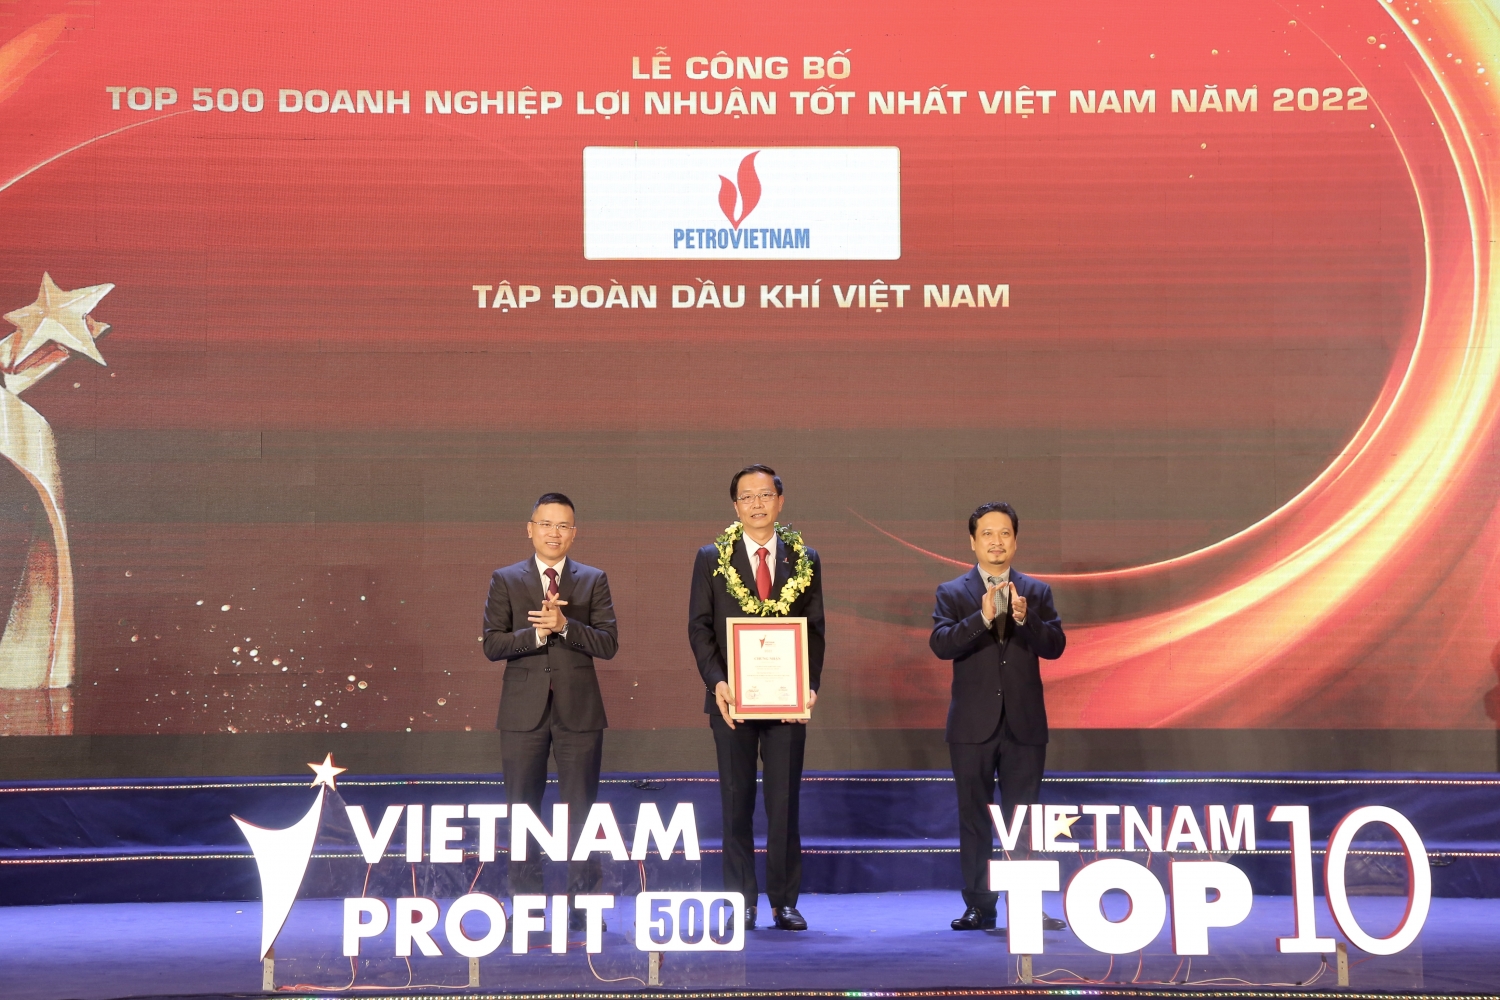 Petrovietnam tiếp tục khẳng định vị trí doanh nghiệp lợi nhuận tốt nhất Việt Nam năm 2